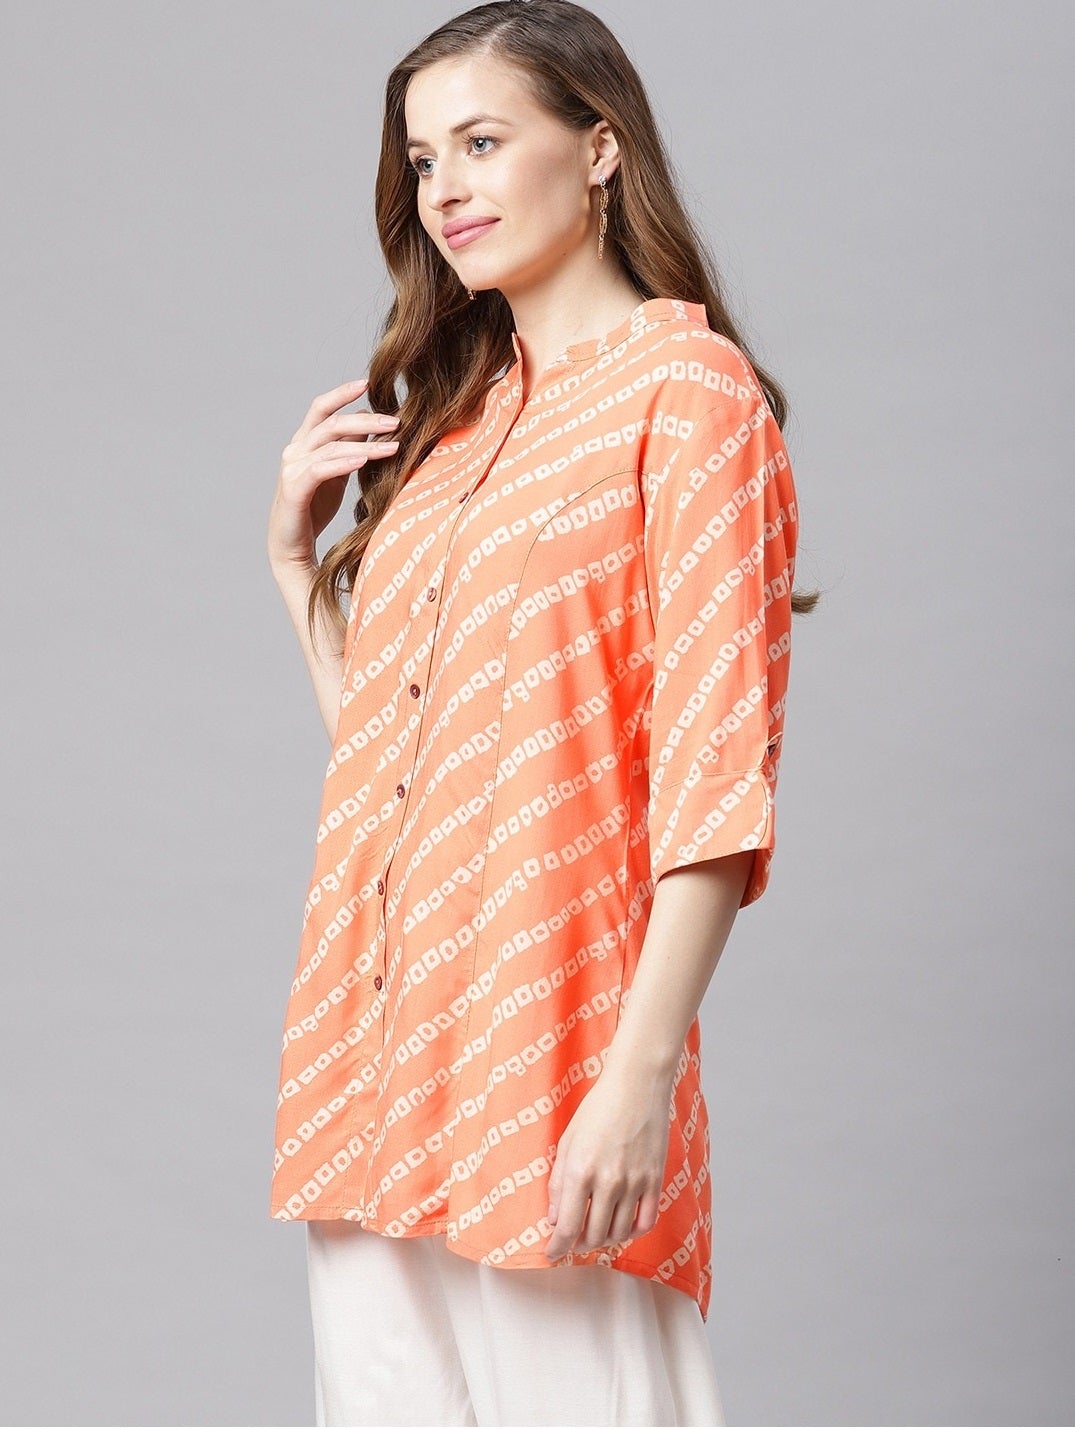 Women's Orange Bandhani Rayon A-Line Shirt Style Top - Noz2Toz